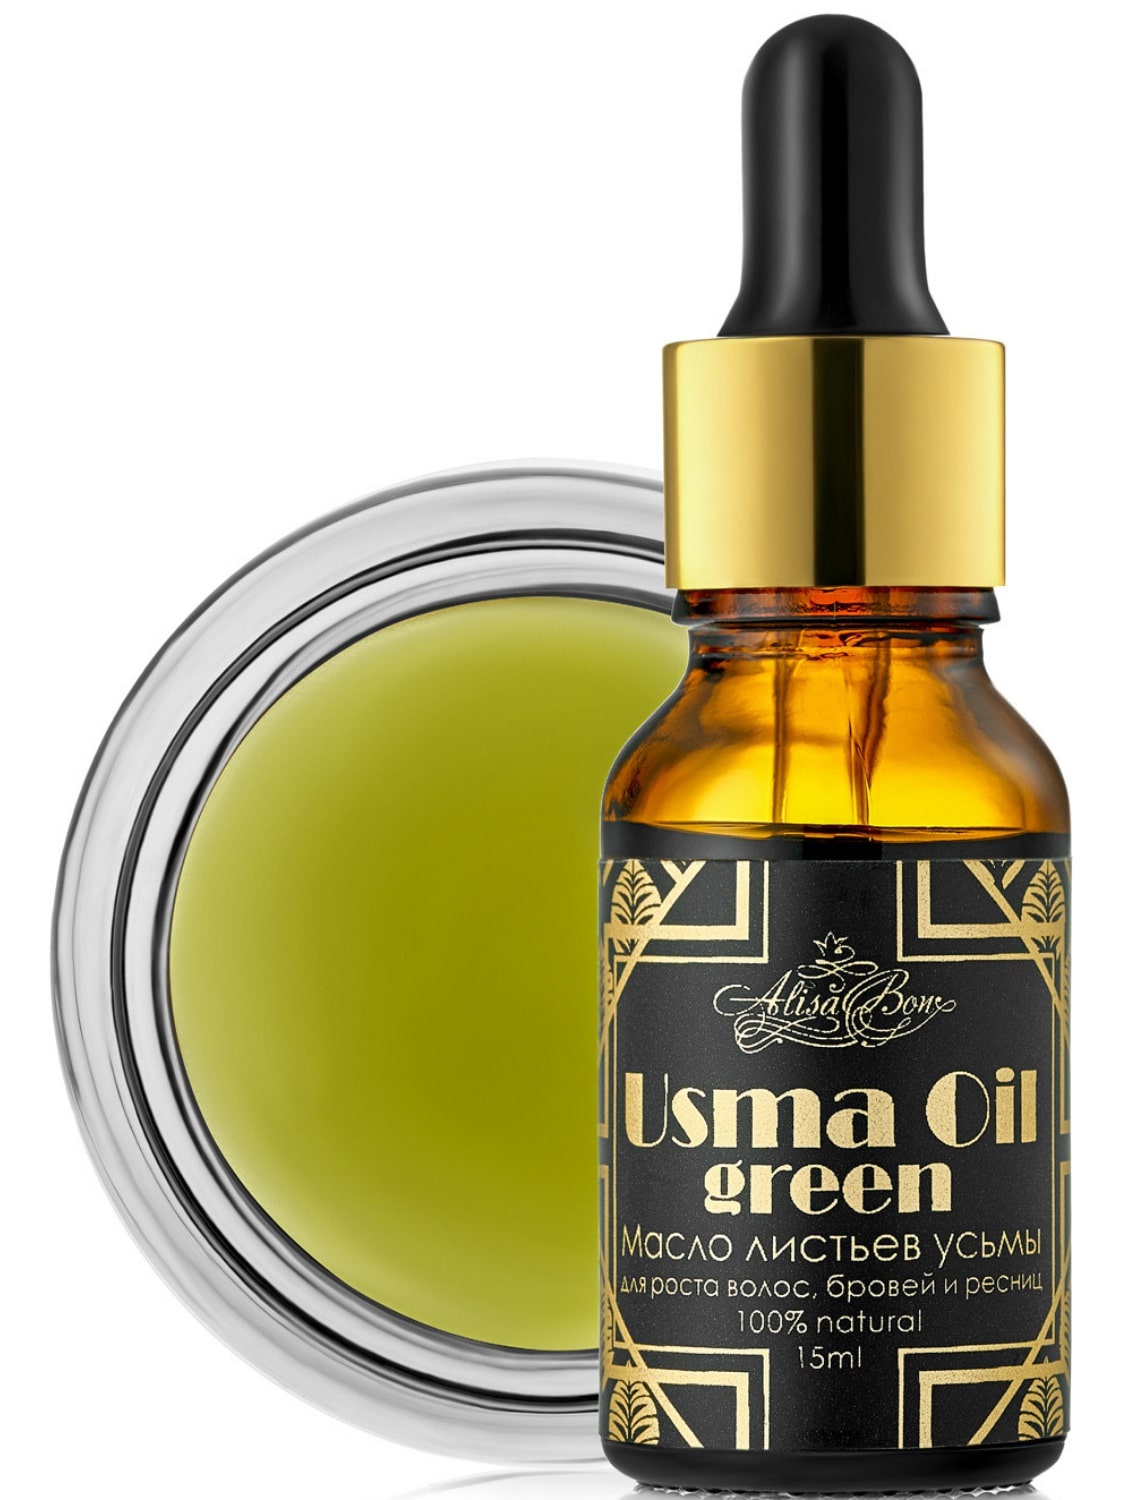 фото Масло листьев усьмы для роста волос, бровей и ресниц "Usma Oil green" Alisa bon